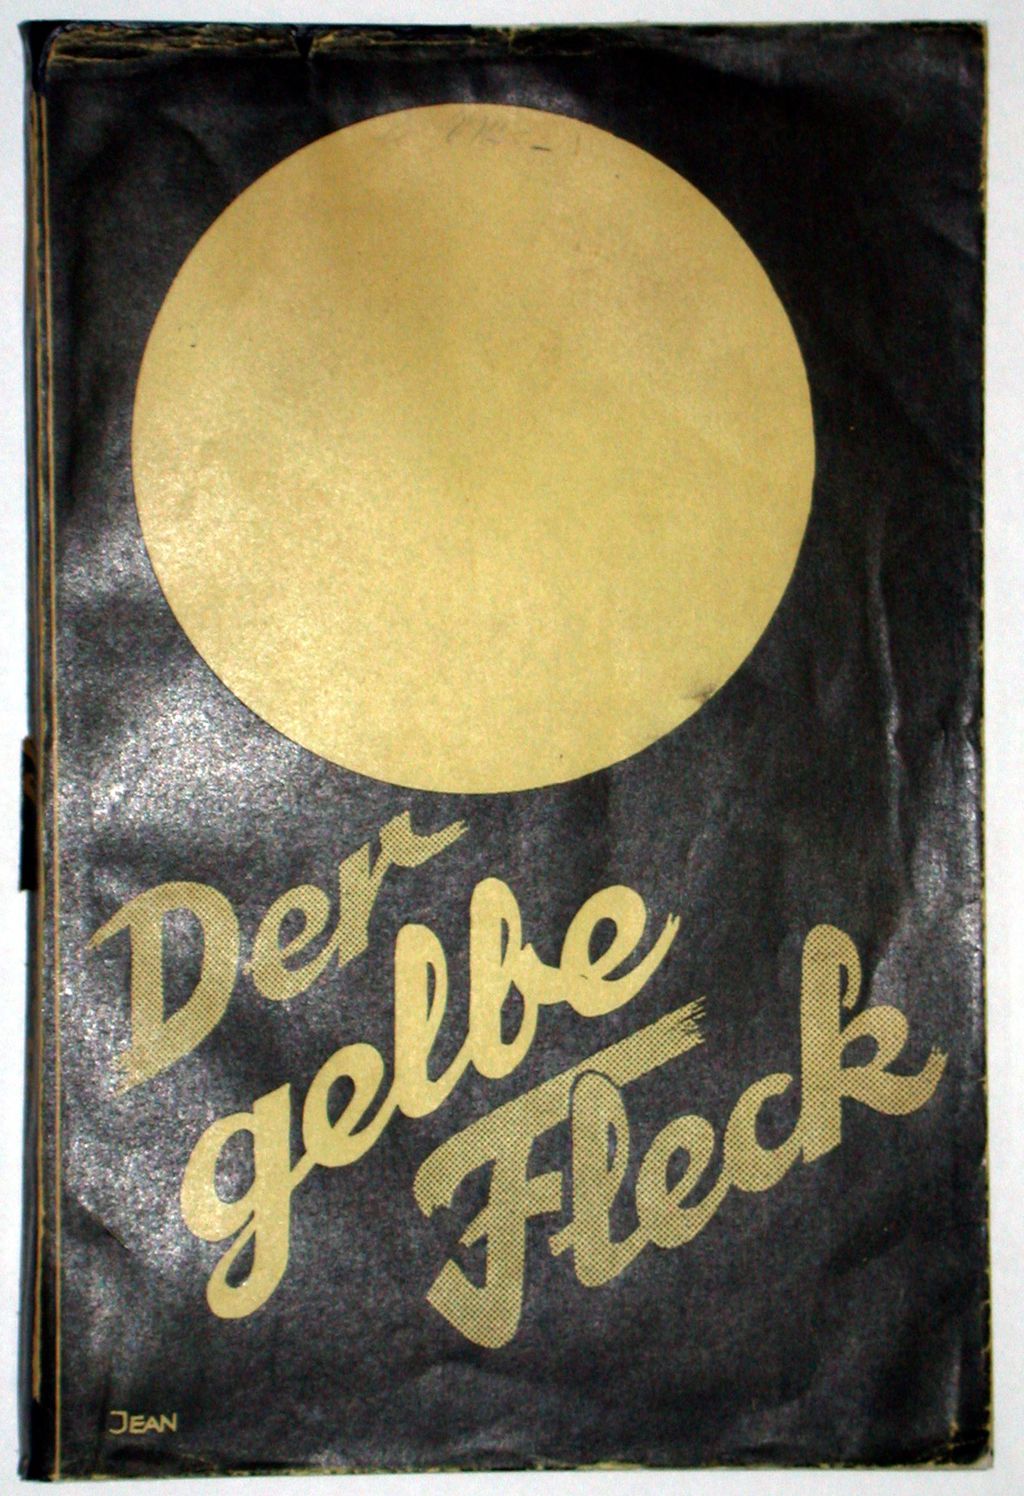 Buch: "Der gelbe Fleck - Die Ausrottung von 500.000 deutschen Juden", 1936